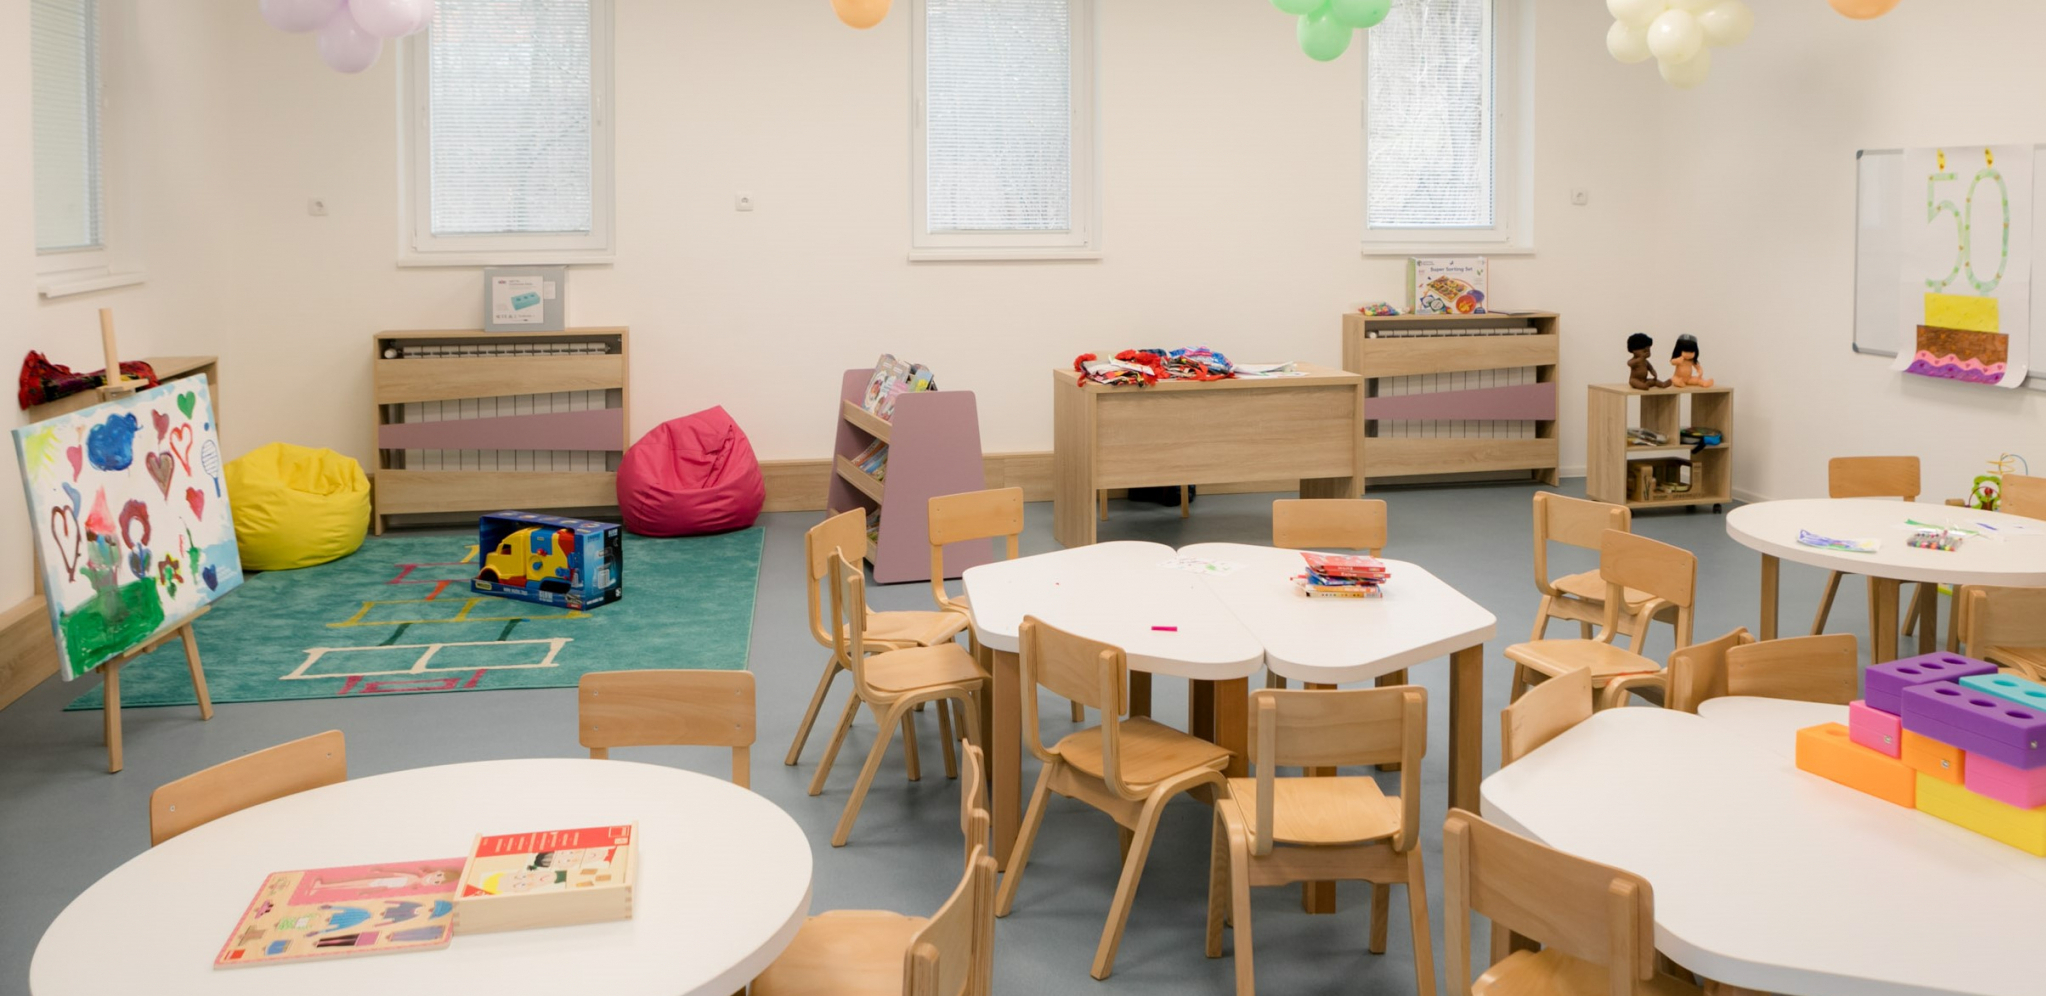 KONKURS ZA UPIS U VRTIĆE U BEOGRADU Gradski sekretar za obrazovanje ima dobre vesti za roditelje predškolaca